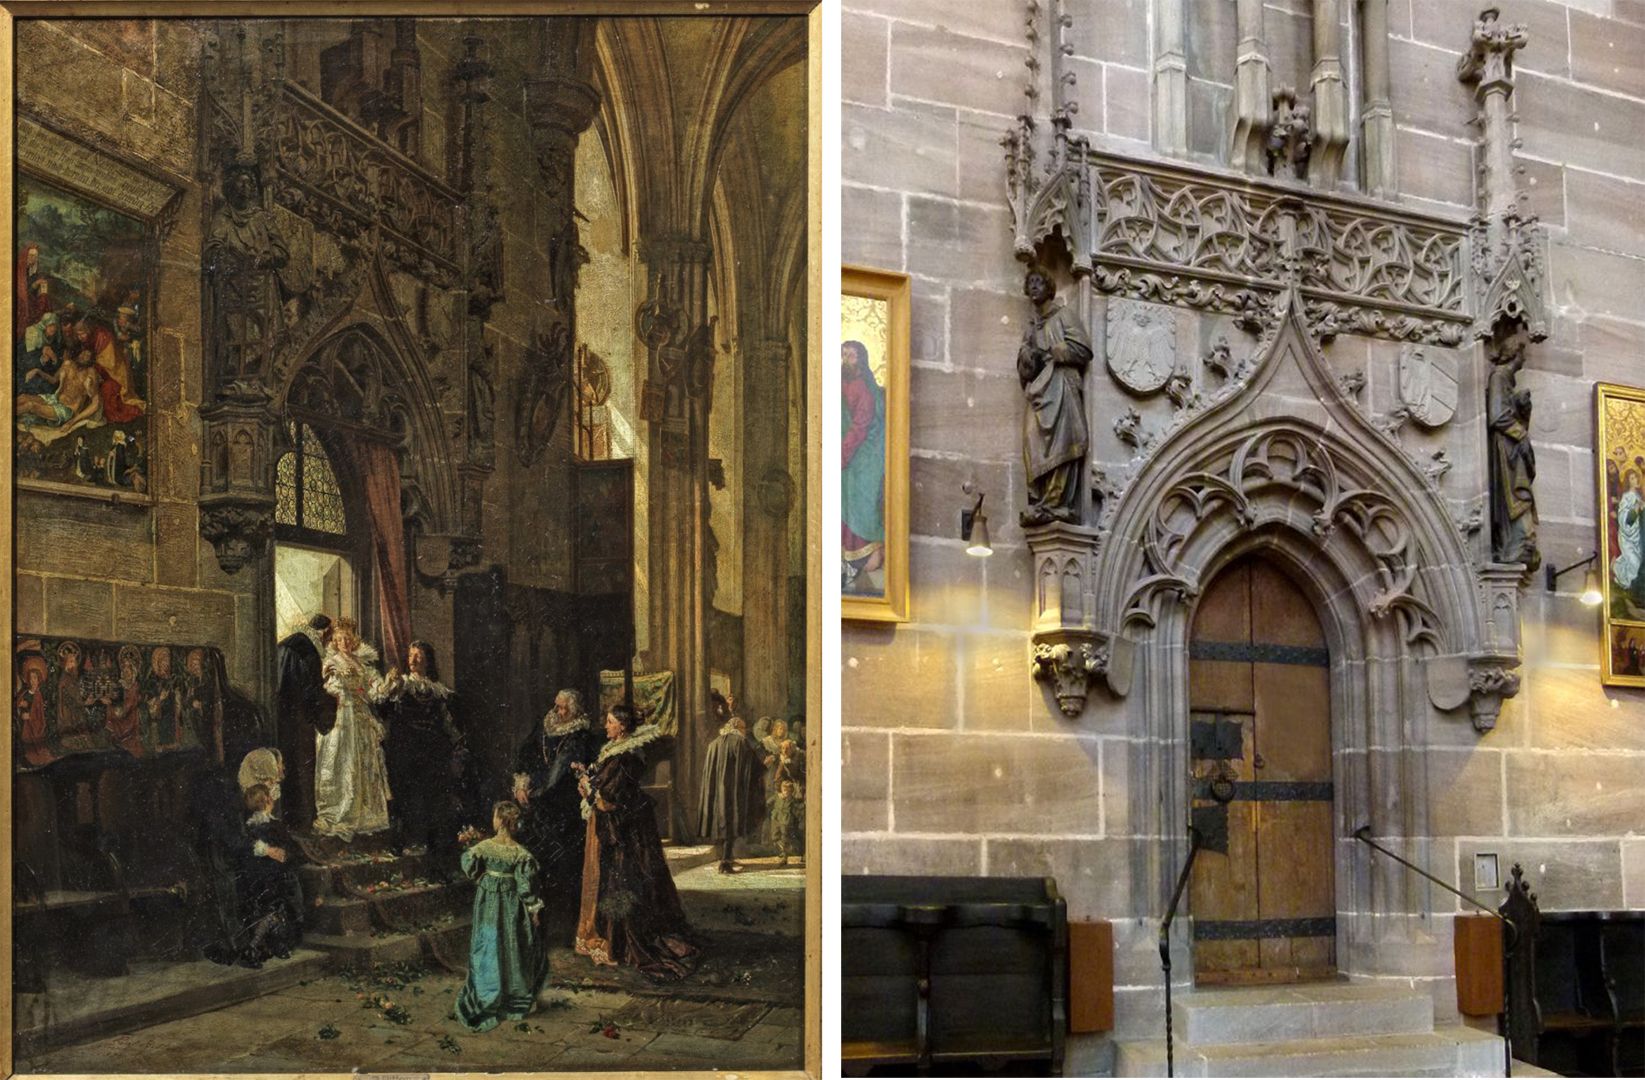 Hochzeitsgesellschaft unter dem Behaim-Chörlein von St. Lorenz Bildvergleich: links Bilddetail, rechts Foto des Portals der Sakristei in St. Lorenz